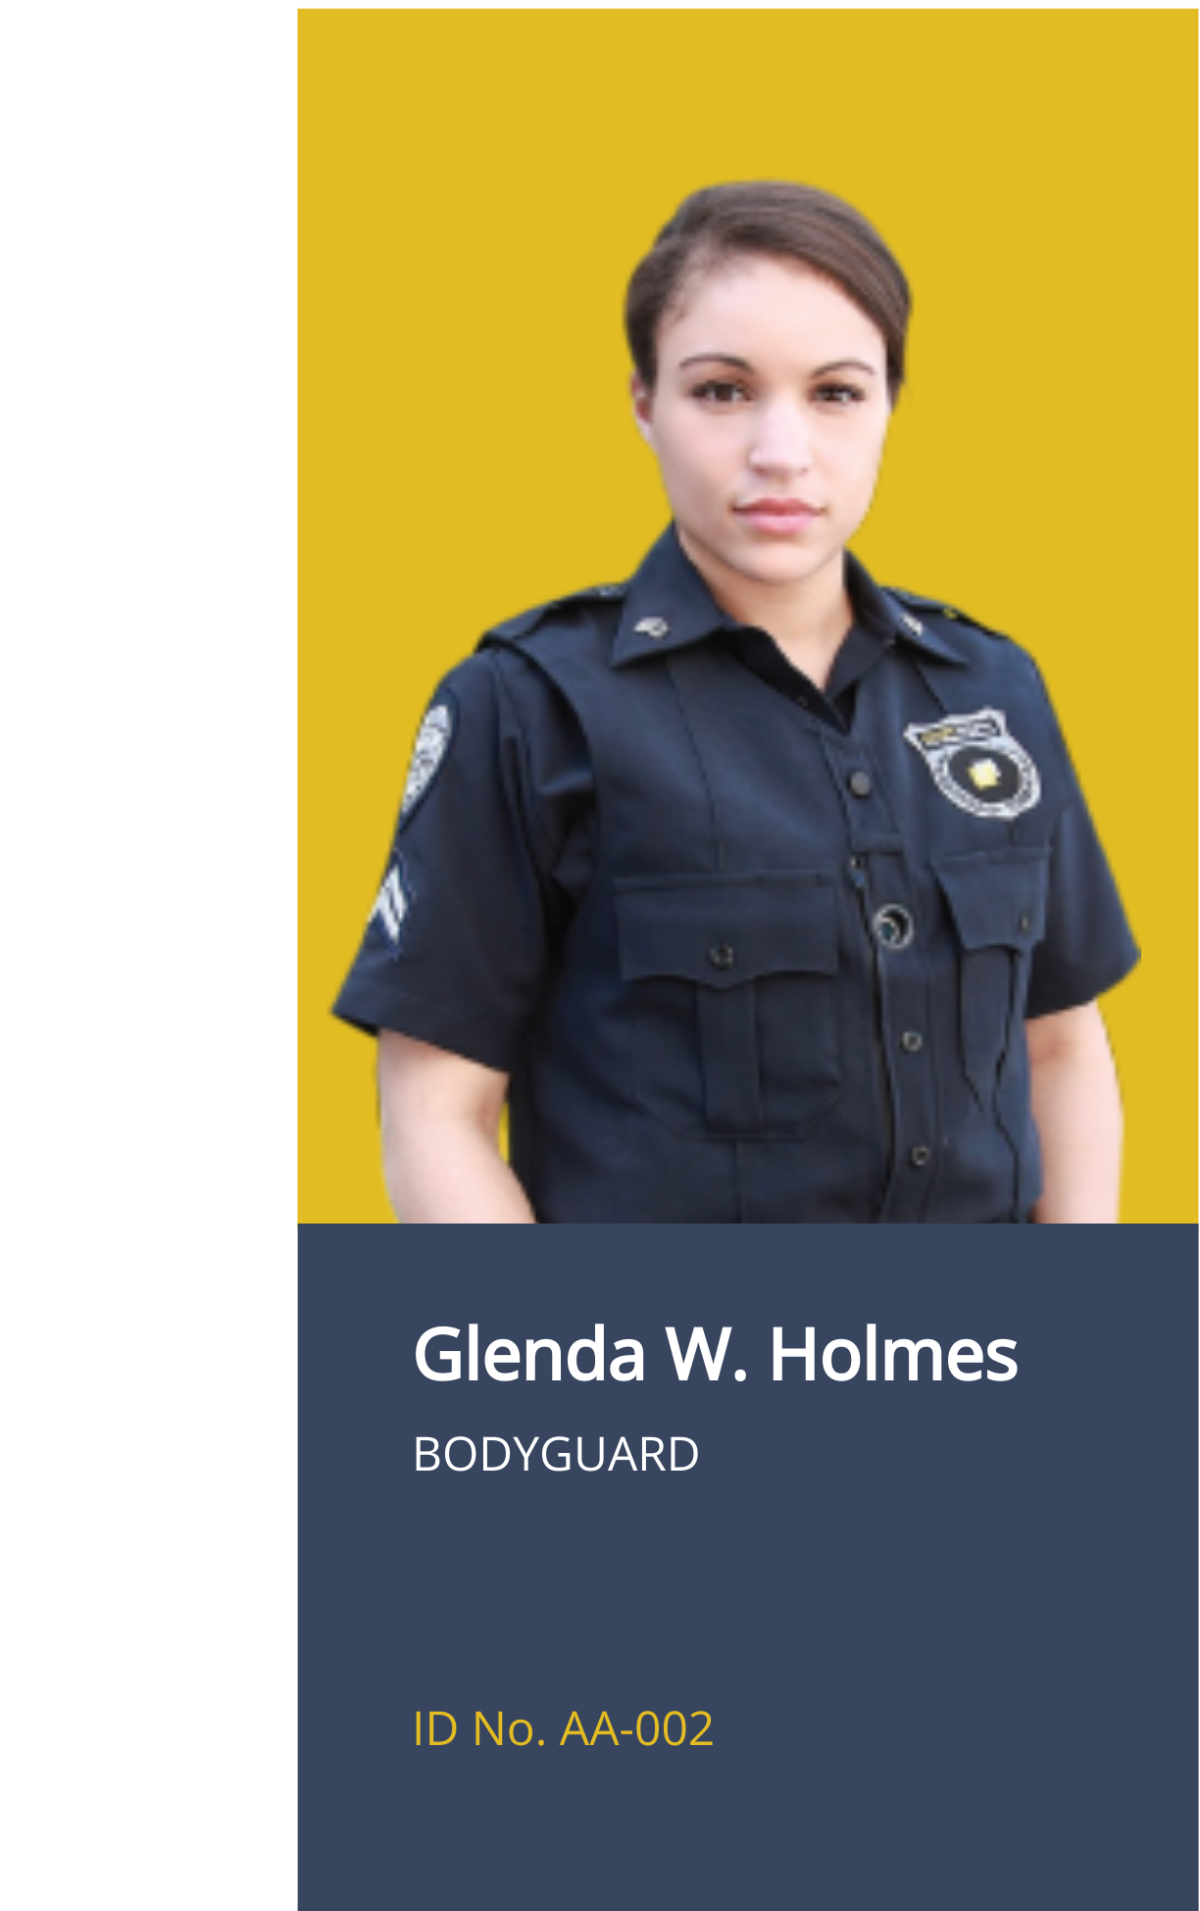 Body Guard ID Card Template